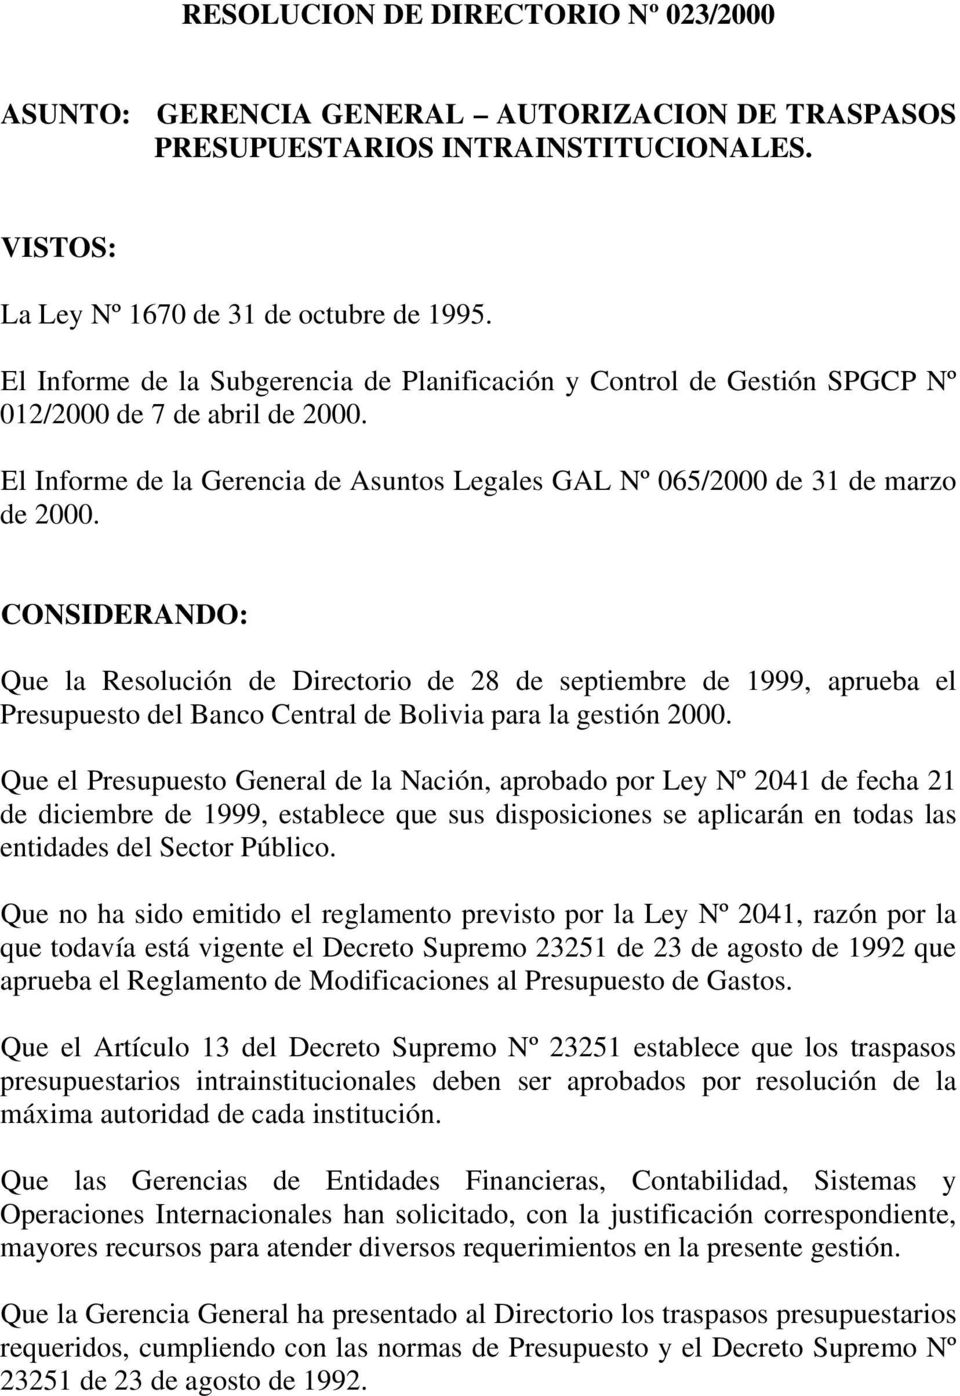 CONSIDERANDO: Que la Resolución de Directorio de 28 de septiembre de 1999, aprueba el Presupuesto del Banco Central de Bolivia para la gestión 2000.